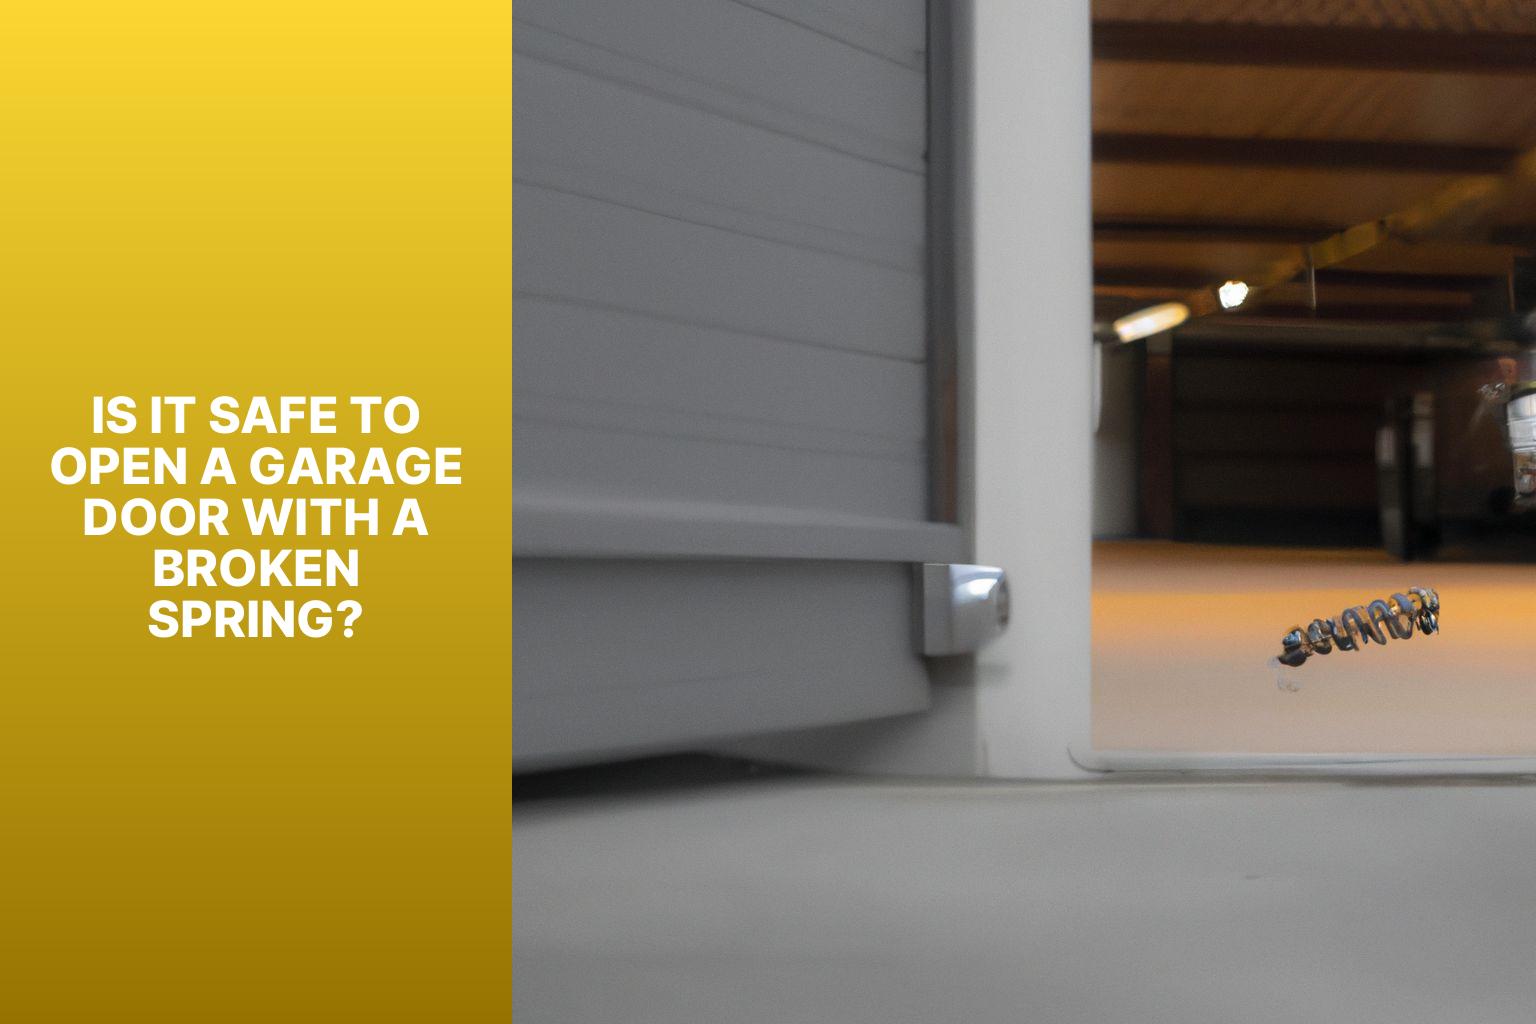 Is it Safe to Open a Garage Door with a Broken Spring? - How to Open Garage Door with Broken Spring? 